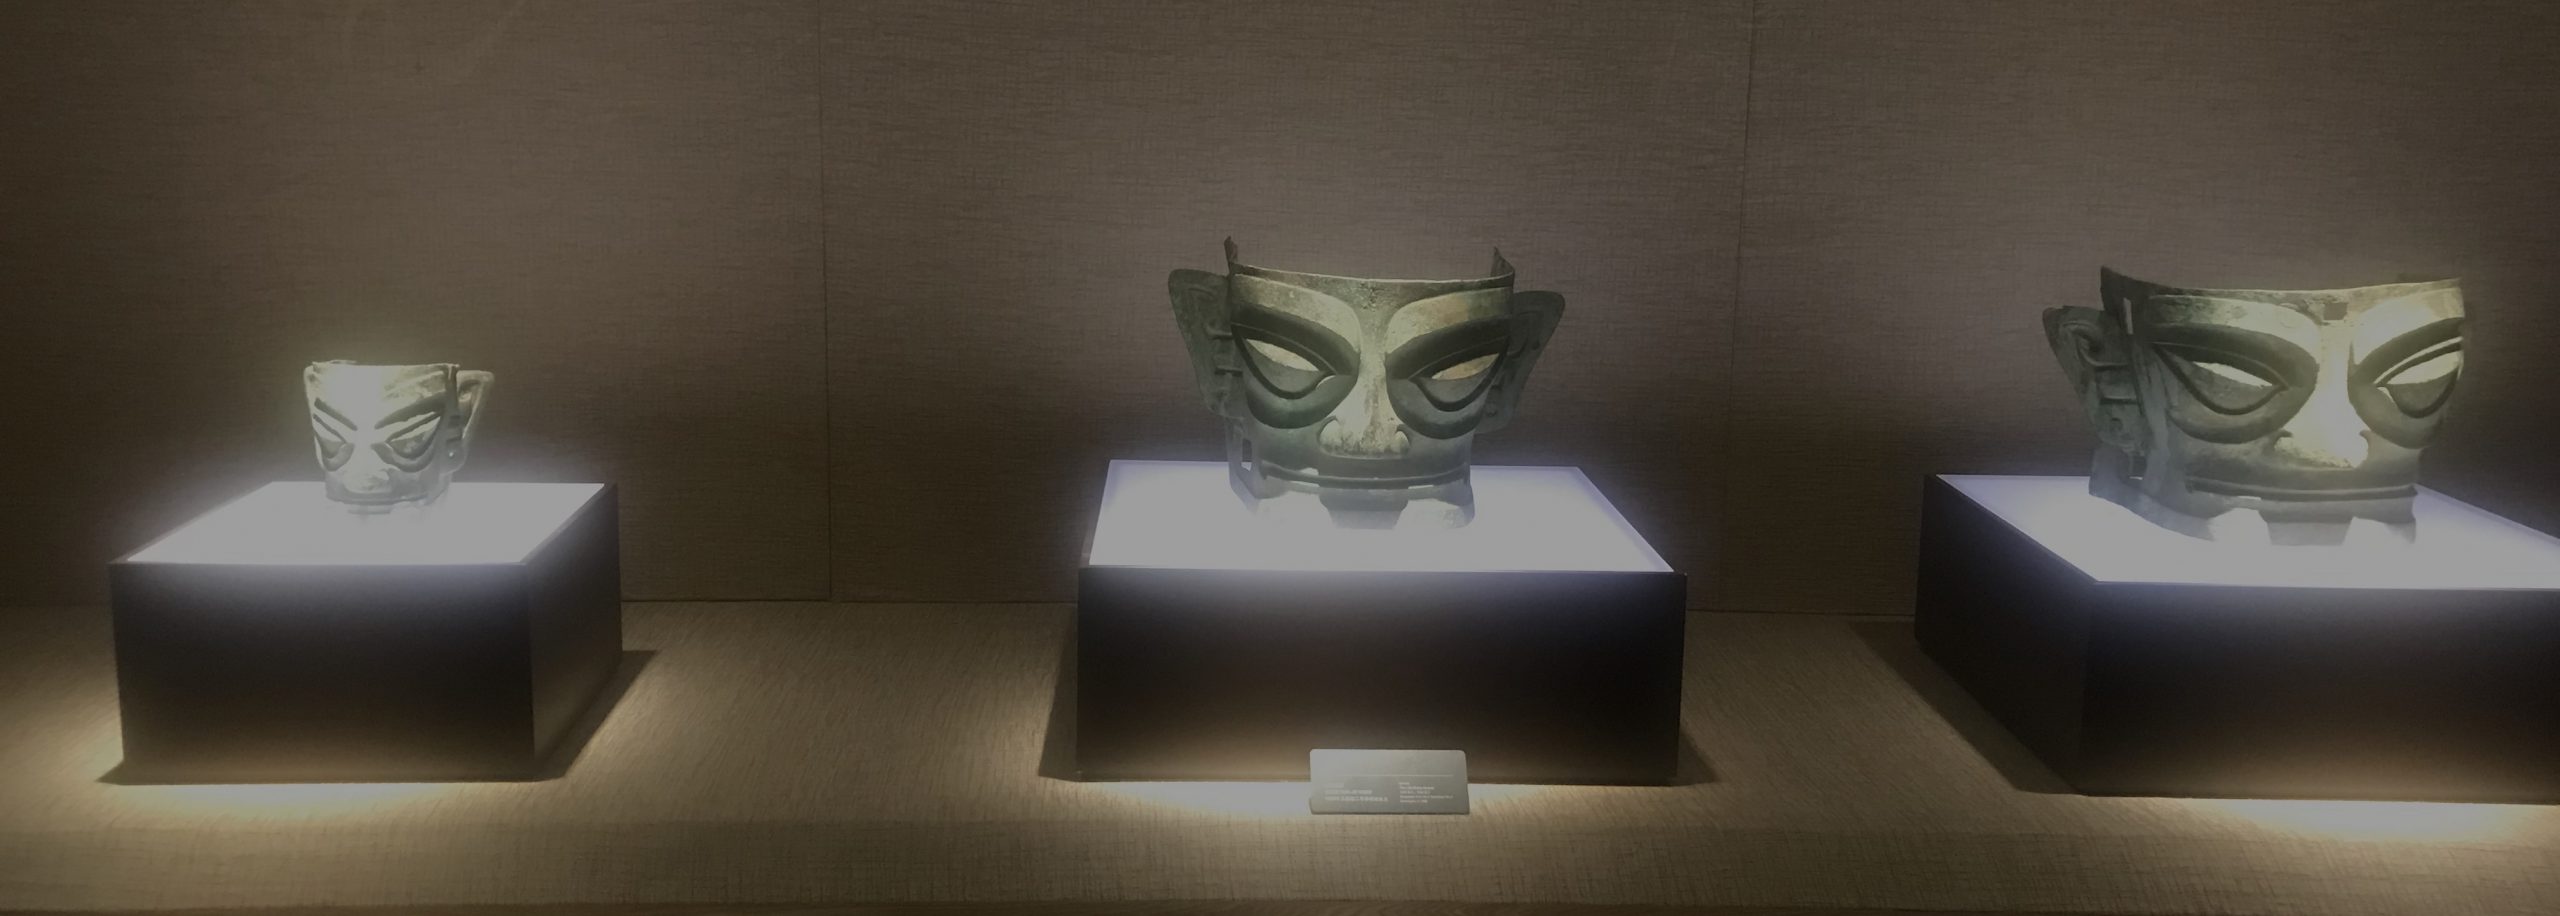 青銅人面具2-青銅器館-三星堆博物館-広漢市-徳陽市-四川省